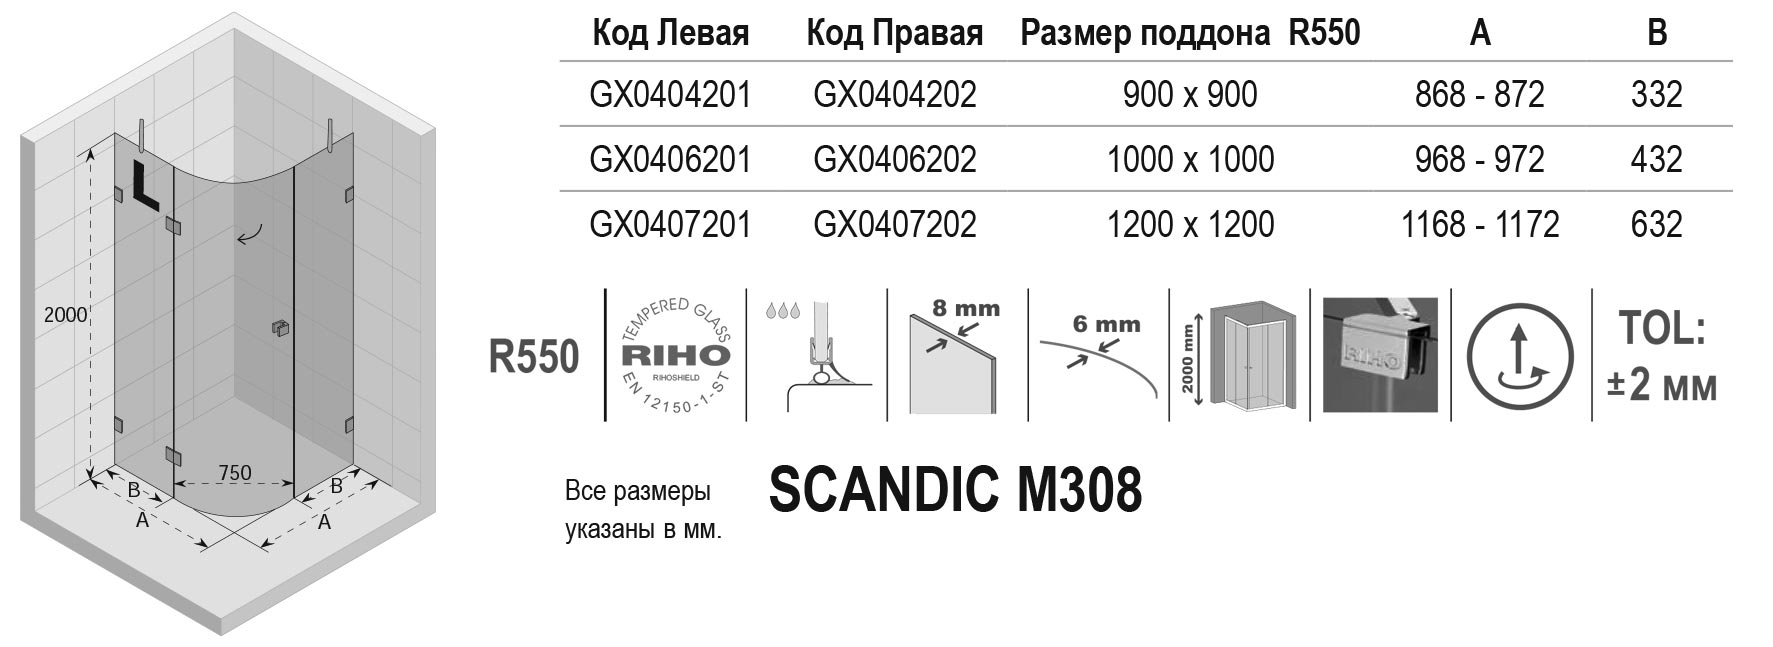 Чертёж Riho Scandic M308 GX0404202